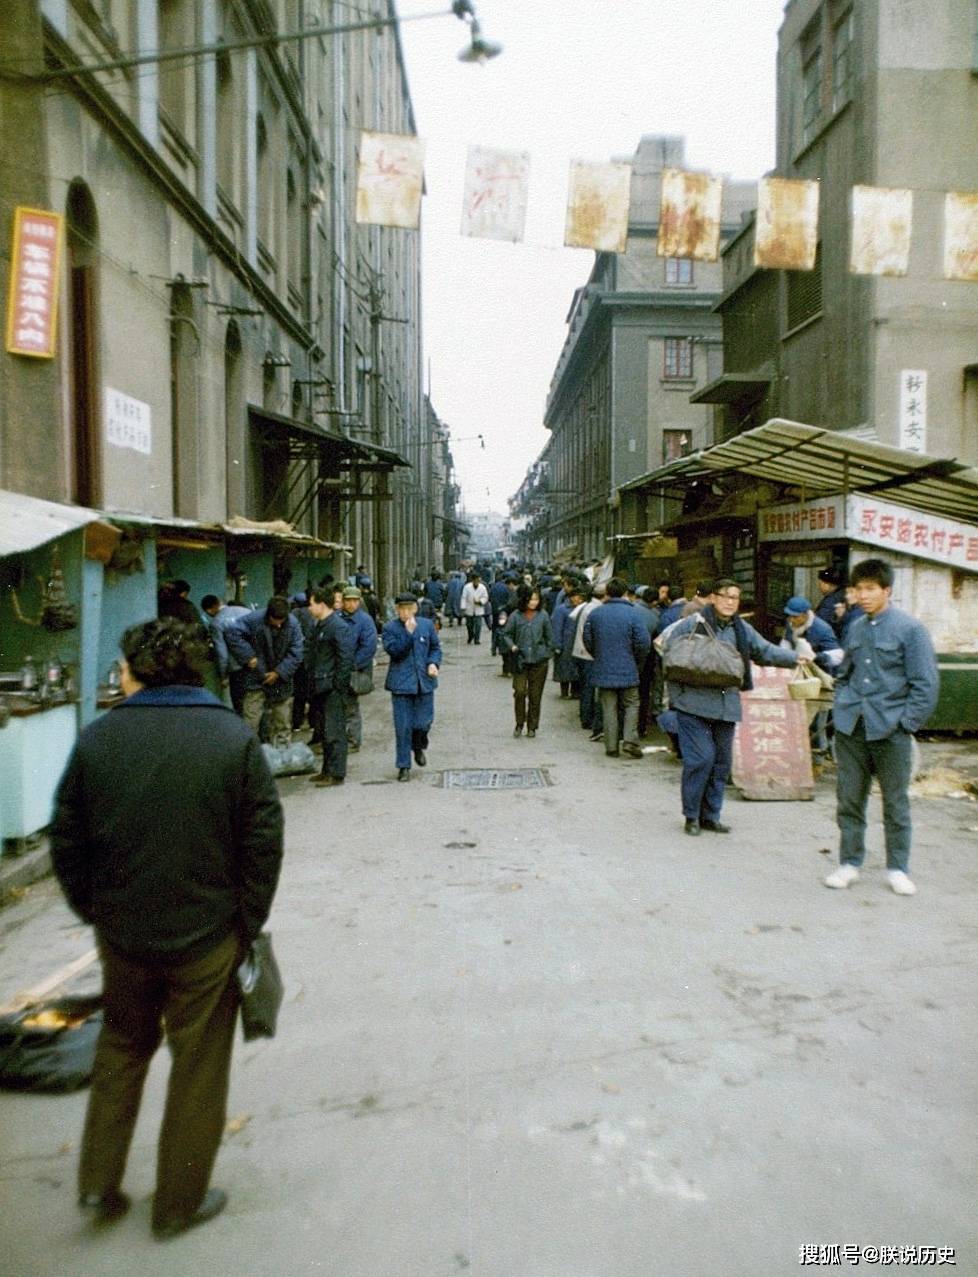 1981年的上海,罕见街拍老照片,这才是80年代生活